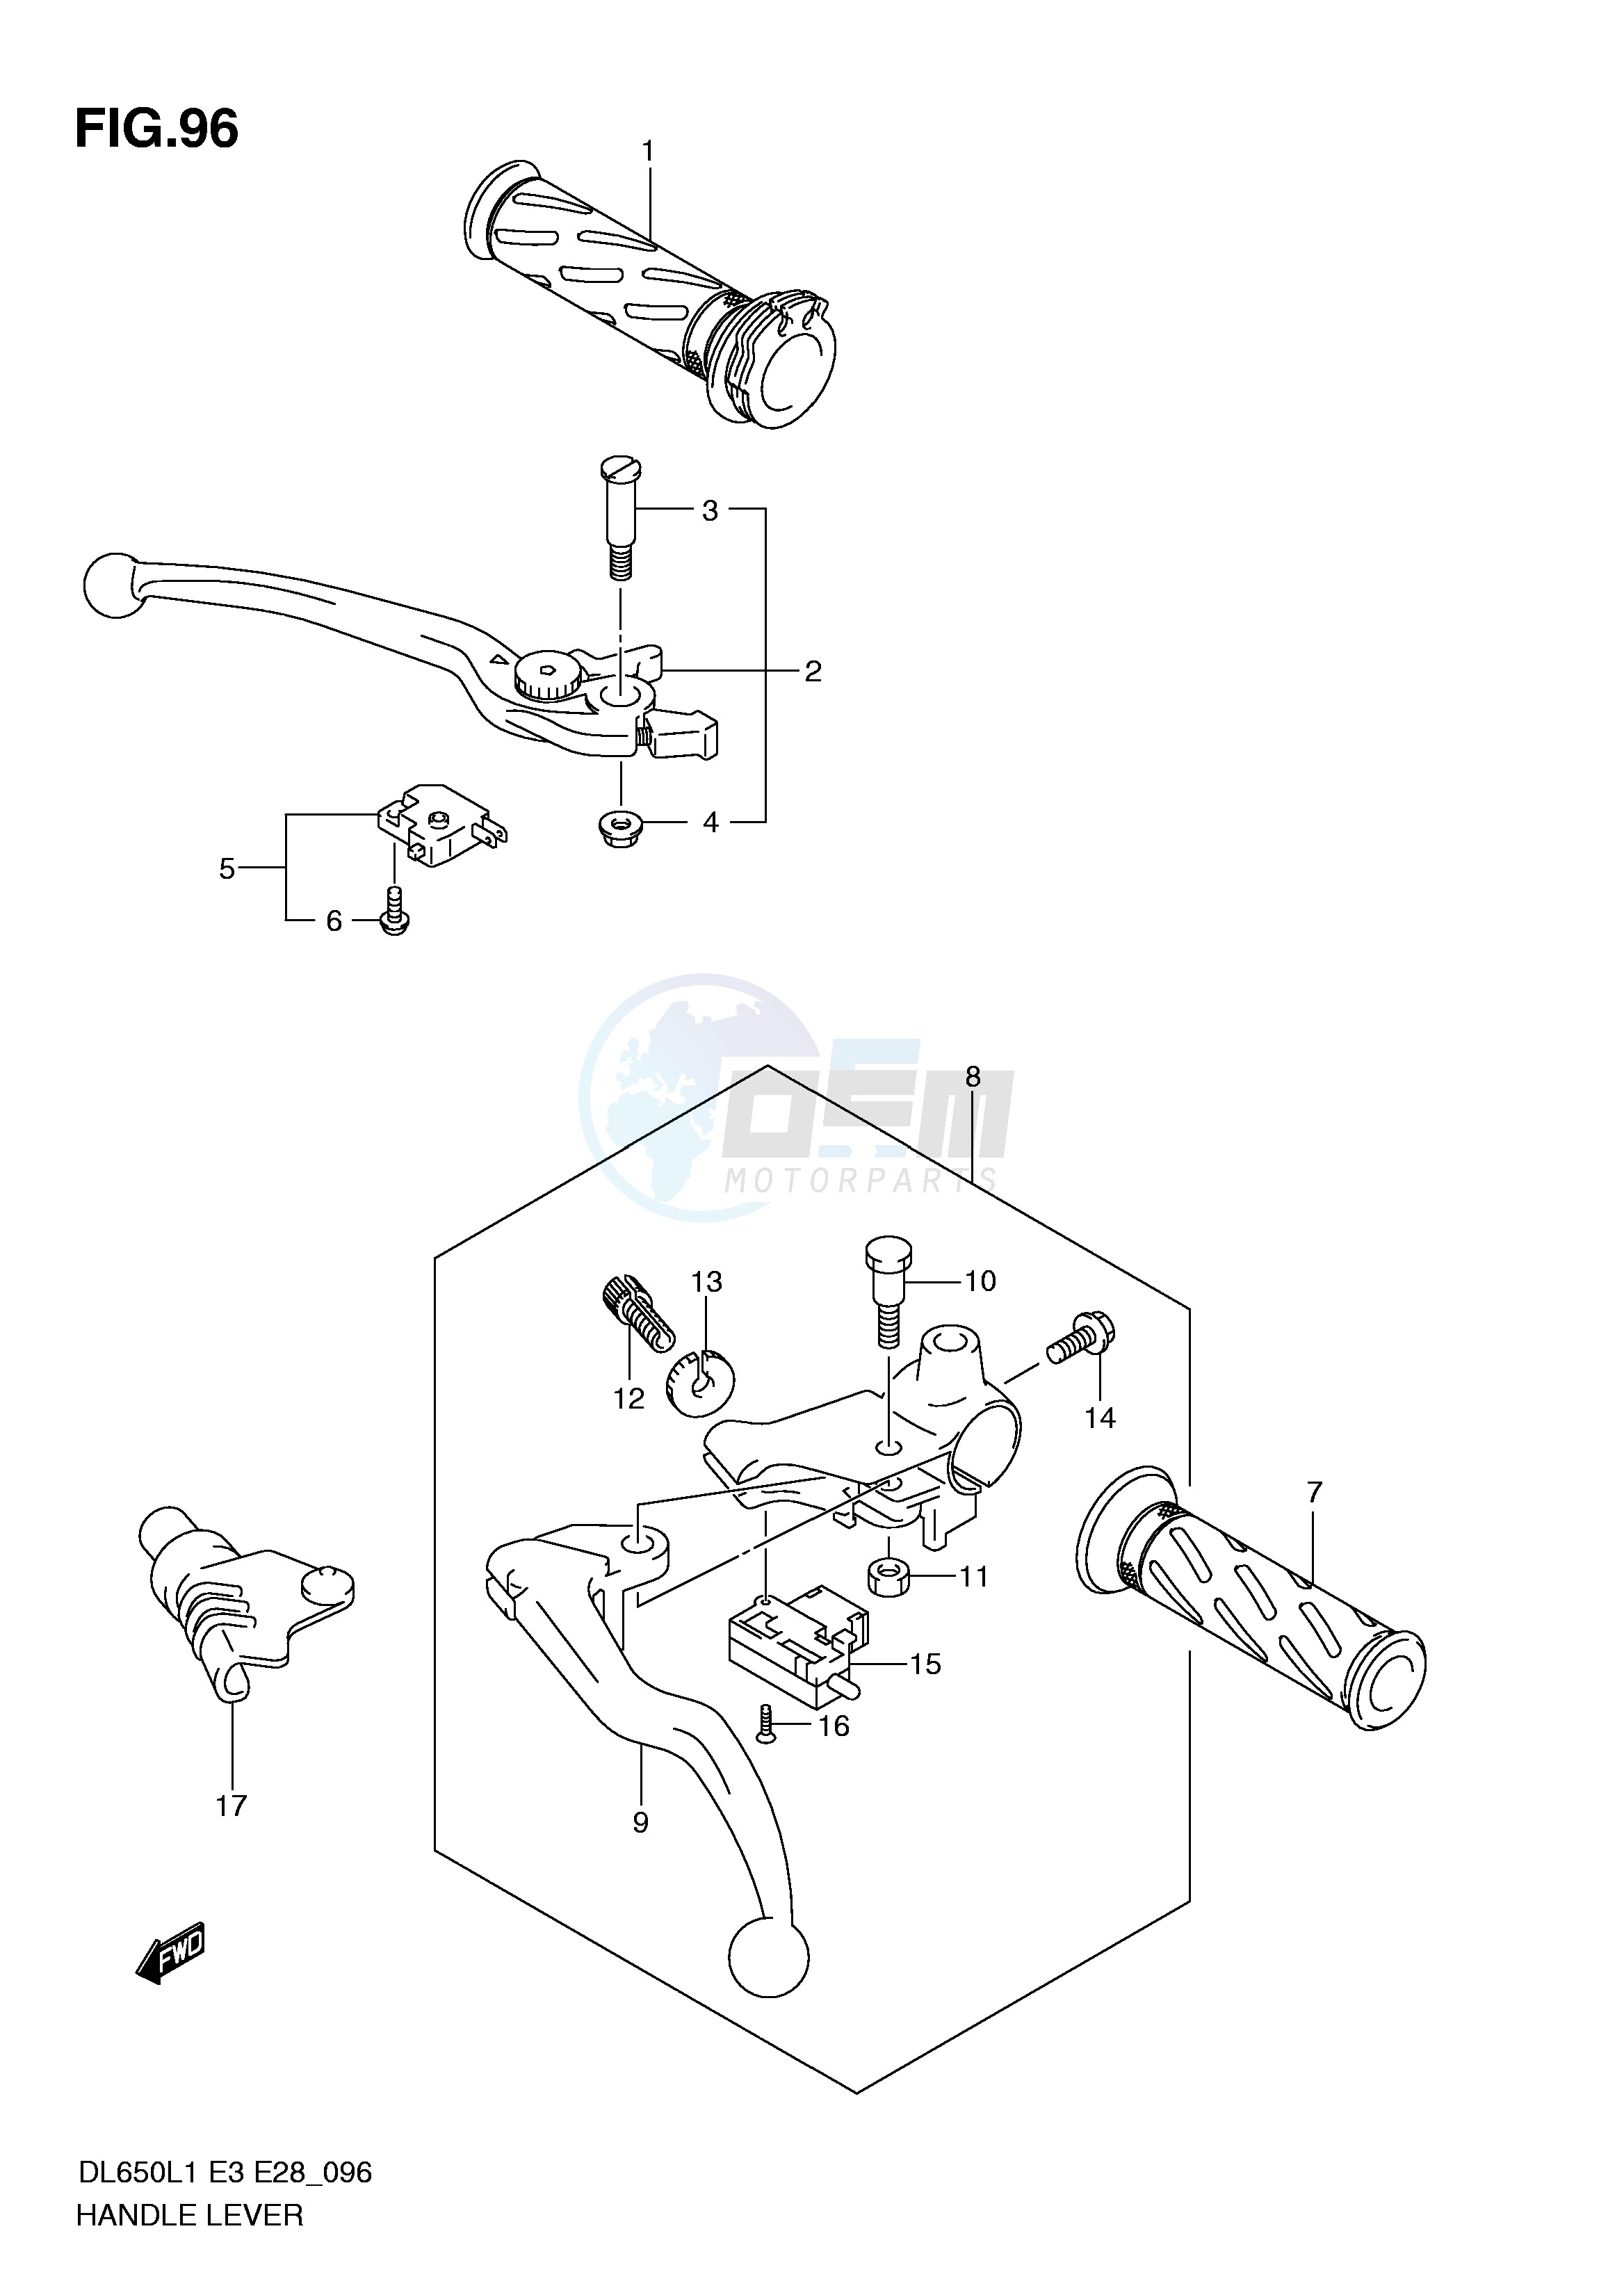 HANDLE LEVER (DL650AL1 E28) blueprint